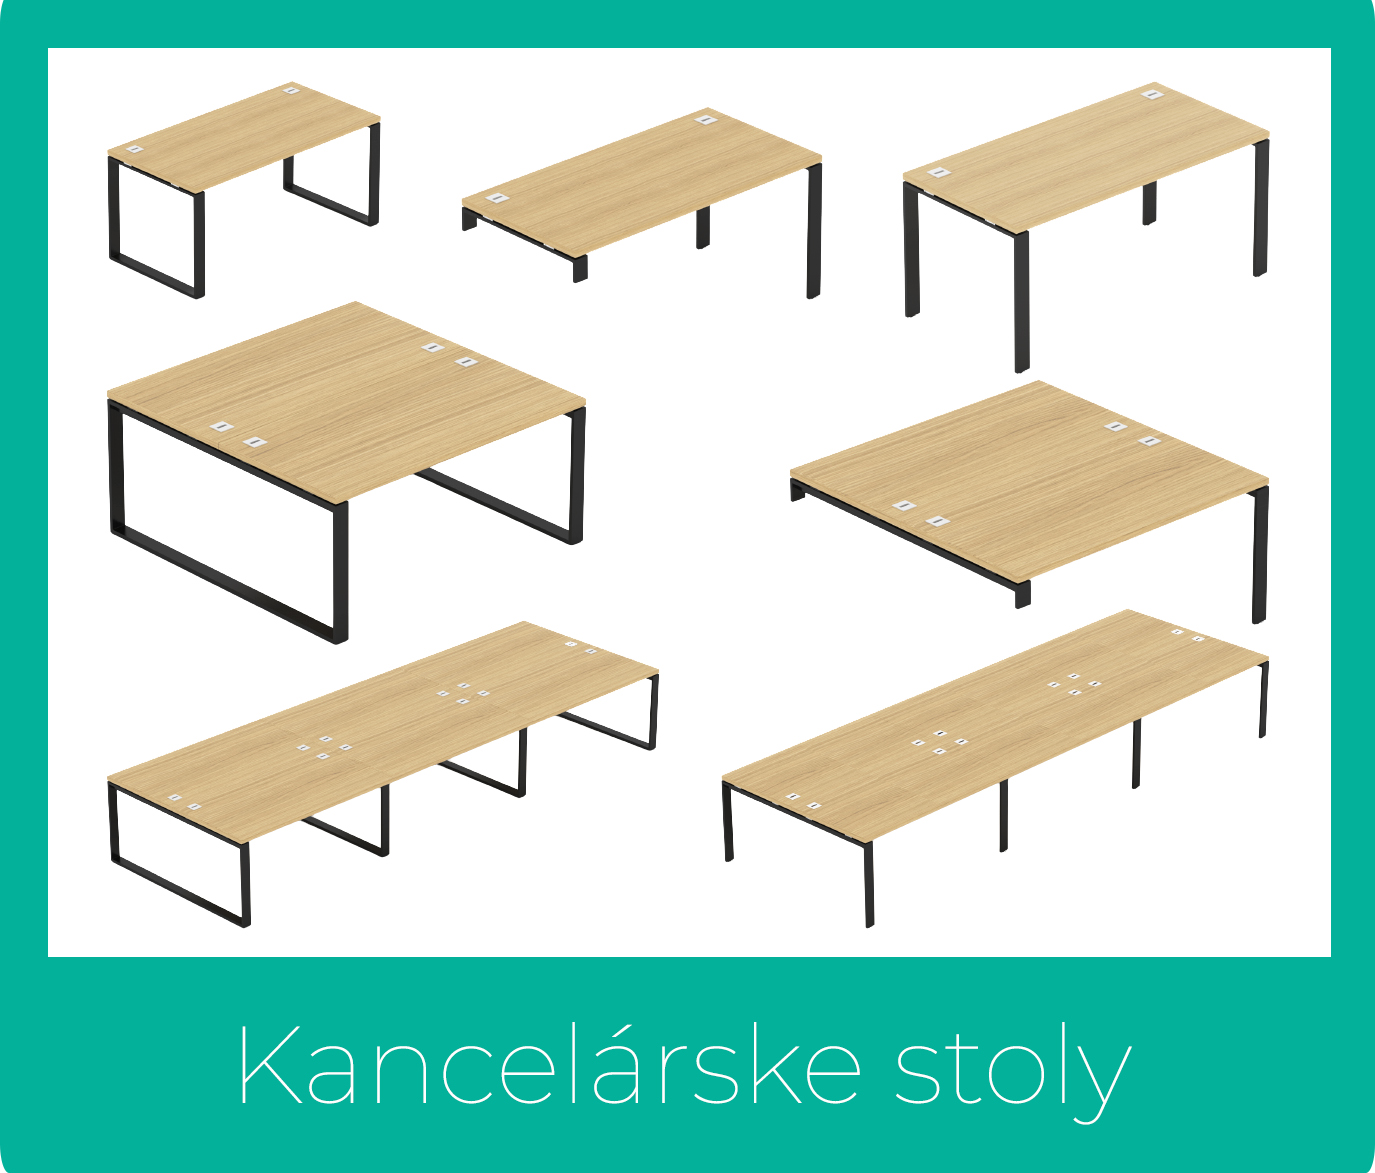 Kancelárske stoly EPIC - Dizajnový NÁBYTOK - www.nabytok-dizajnovy.sk